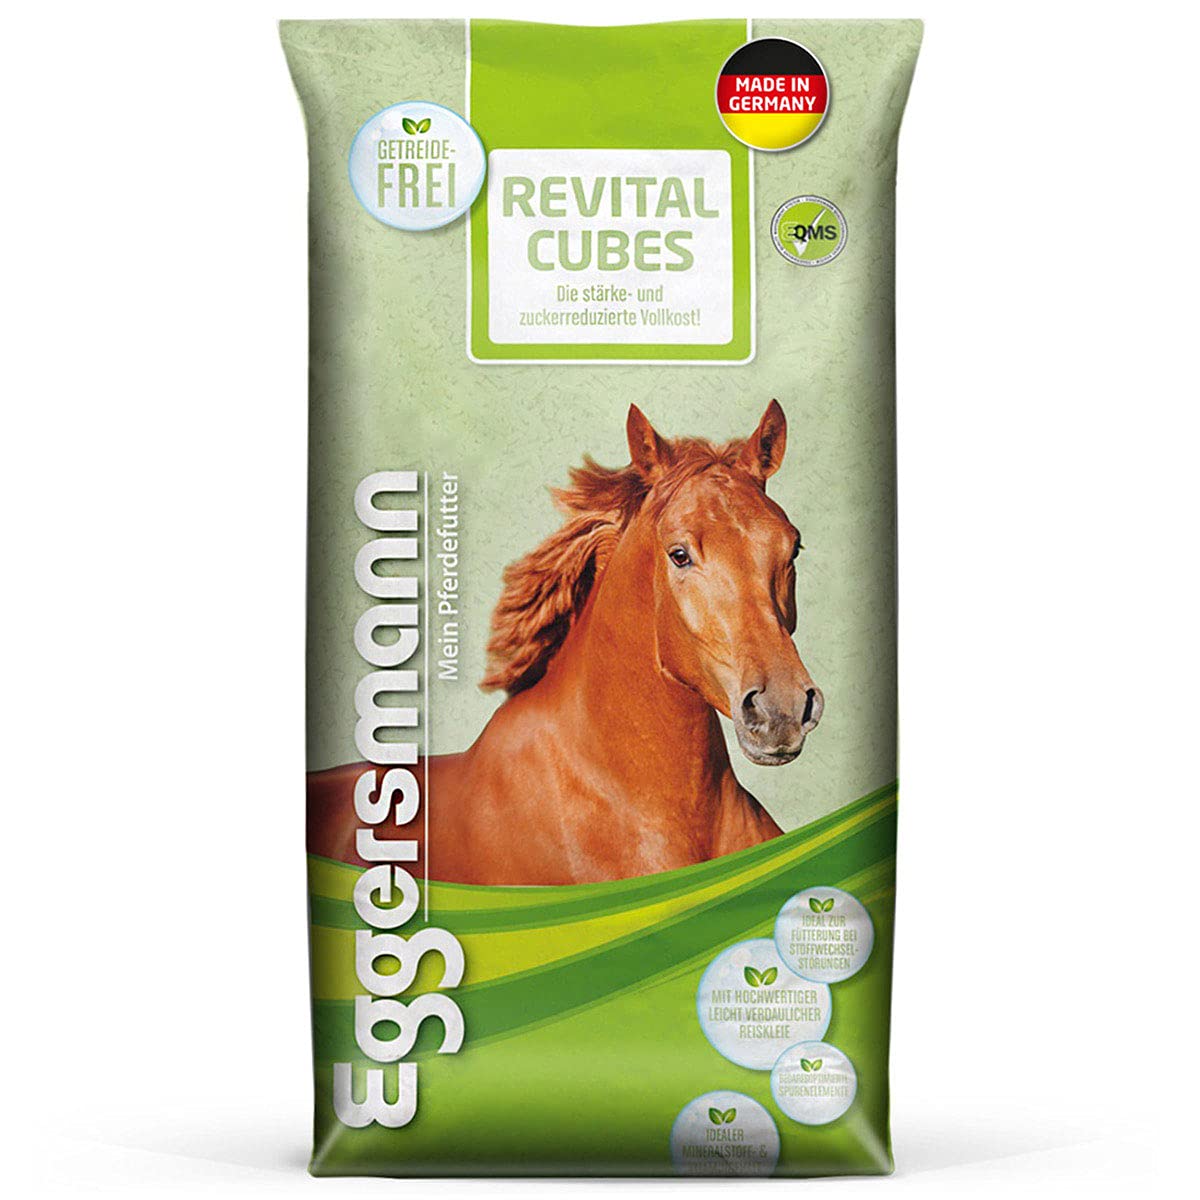 Eggersmann ReVital Cubes – Stärkereduziertes Pferdefutter Getreidefrei für Stoffwechselprobleme und Cushing – 25 kg Sack